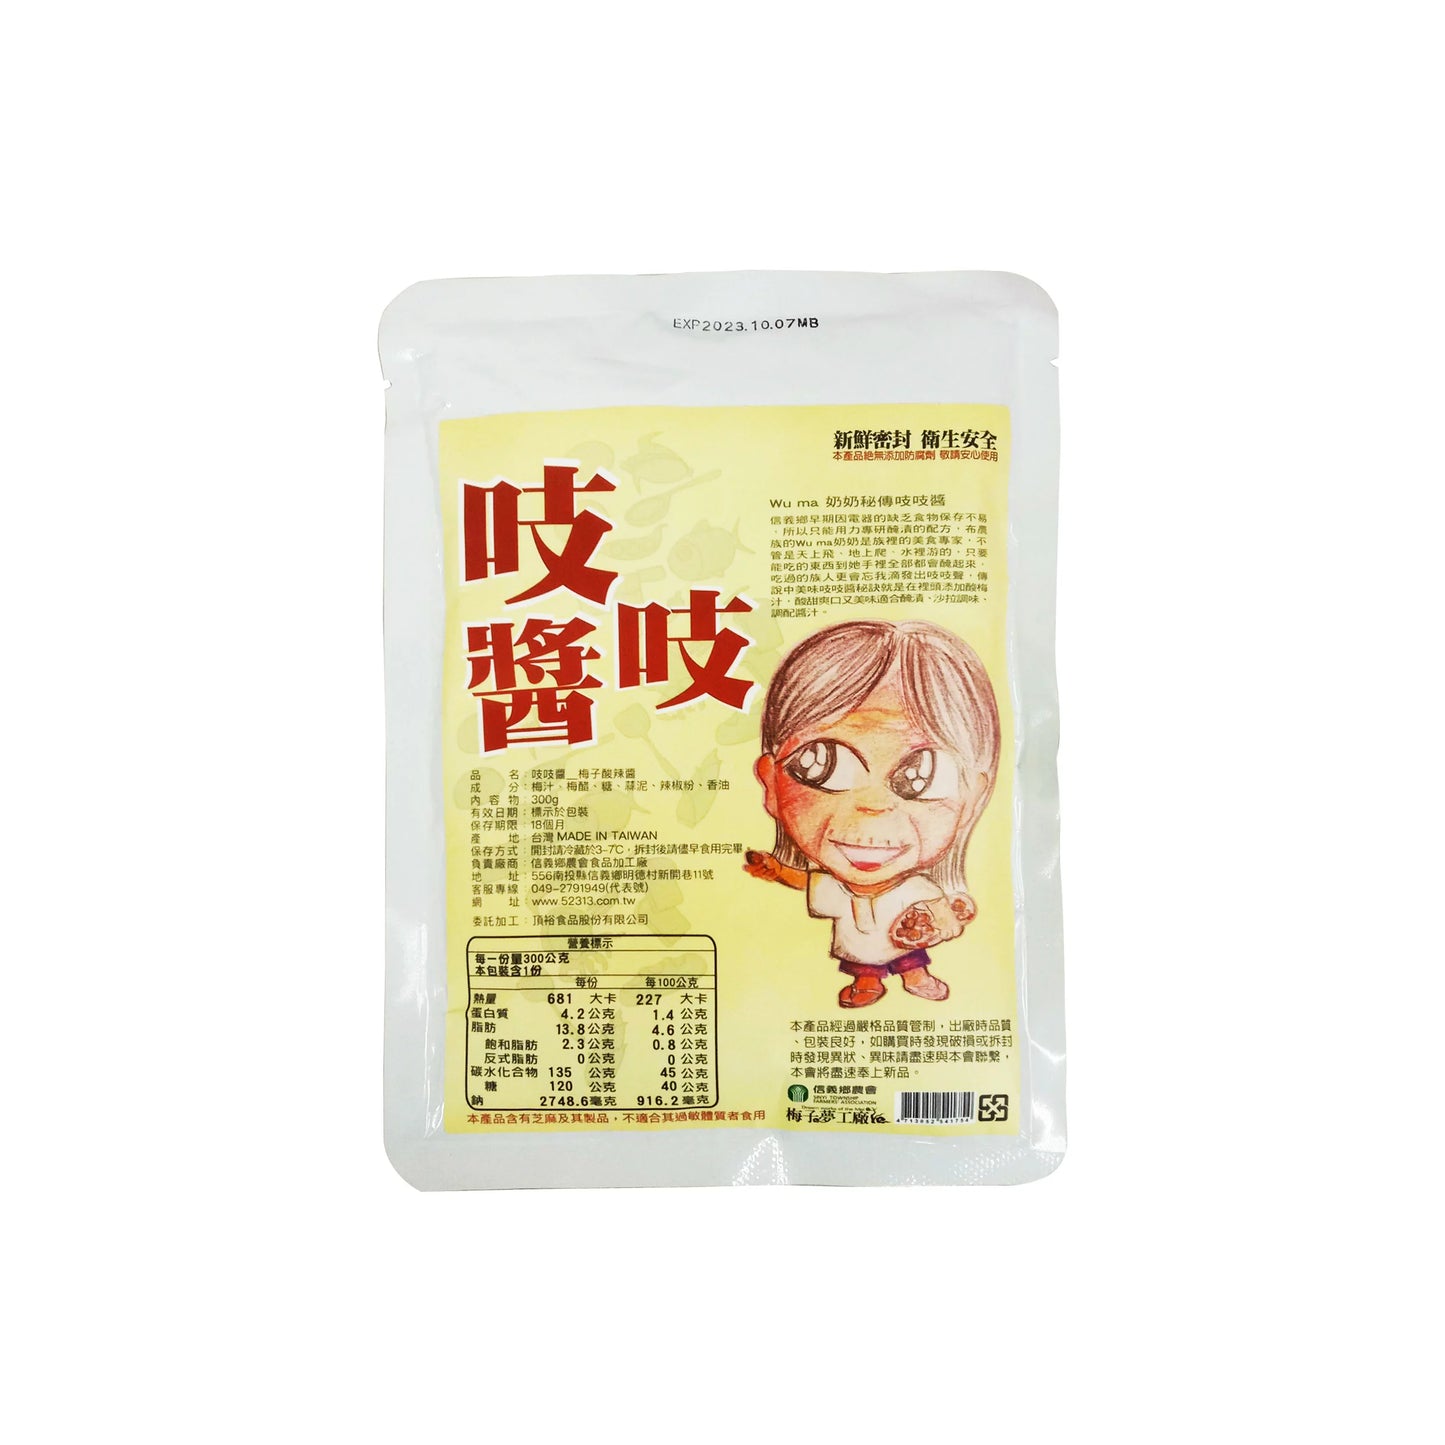 #5431 吱吱醬_梅子酸辣醬 Spicy And Sour Plum Sauce (信義鄉農會)  300 g , 20 pcs/cs